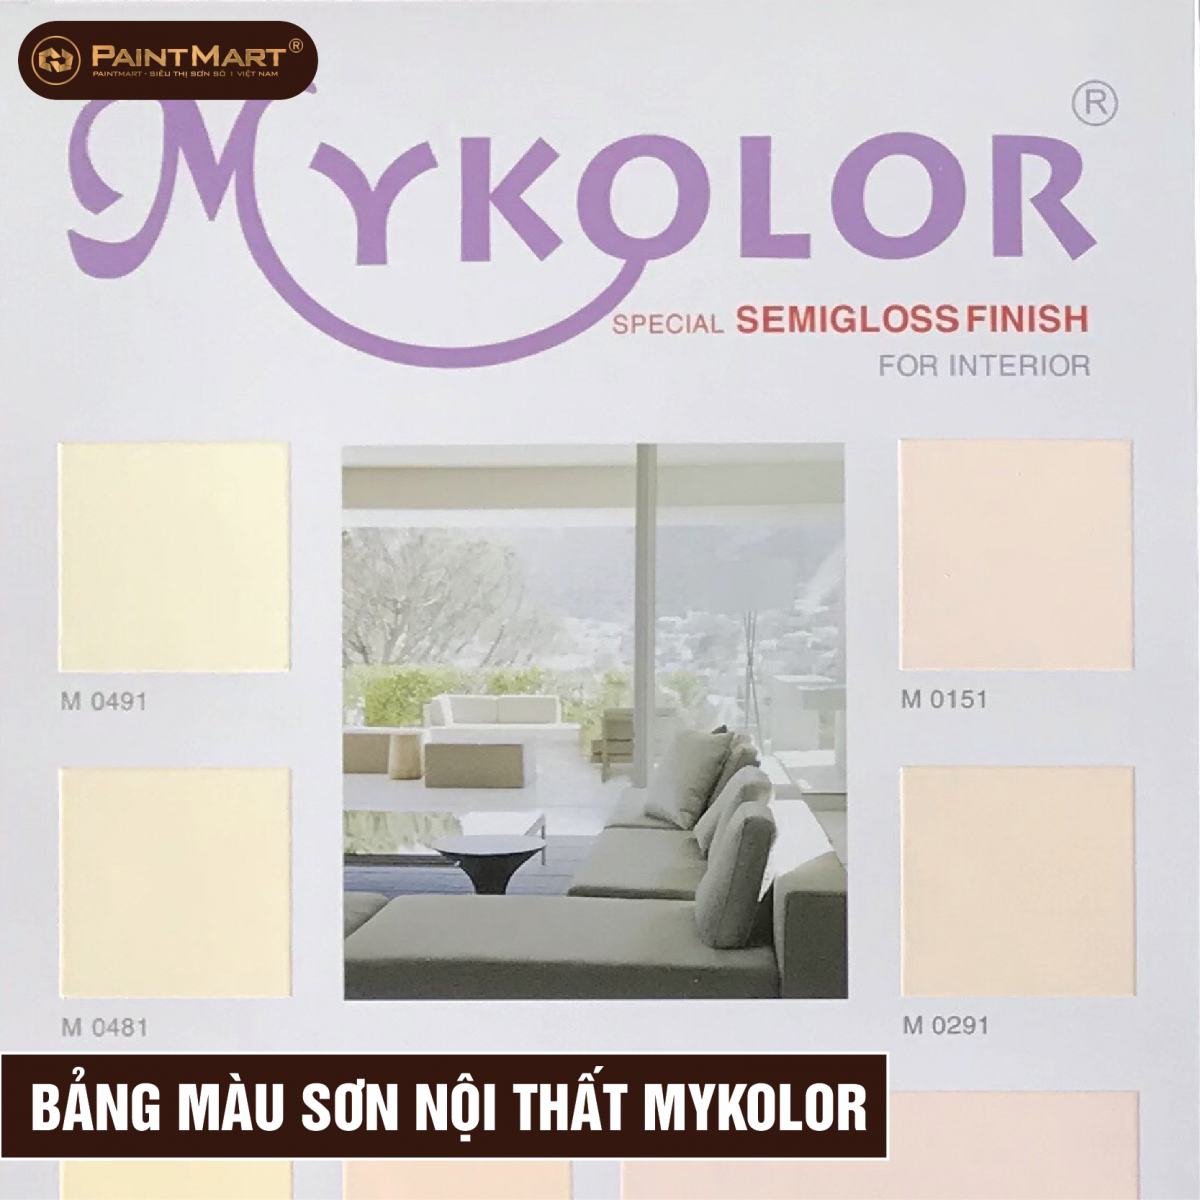 Màu sơn Mykolor đa dạng và đẹp mắt sẽ giúp bạn biến ngôi nhà của mình thành một tác phẩm nghệ thuật sống động và thú vị. Hãy tìm hiểu thêm về sản phẩm để lựa chọn màu sắc hoàn hảo cho ngôi nhà của mình.